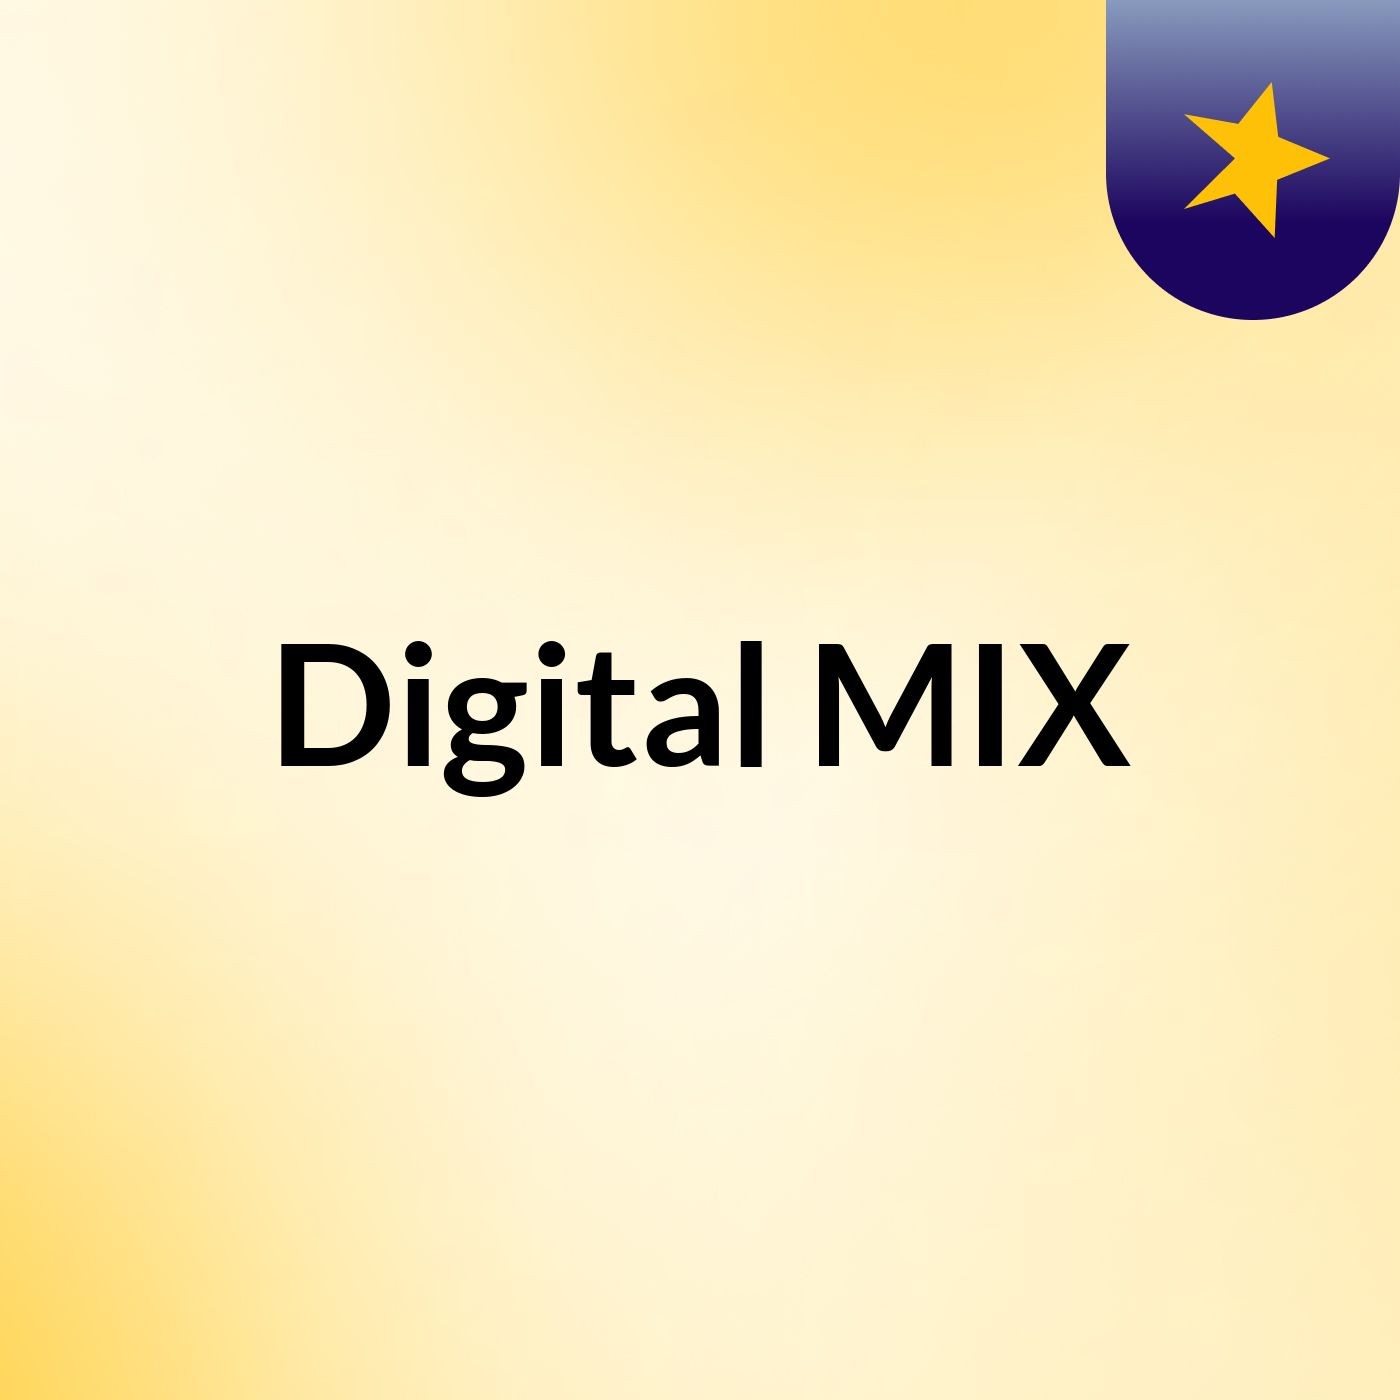 Digital MIX